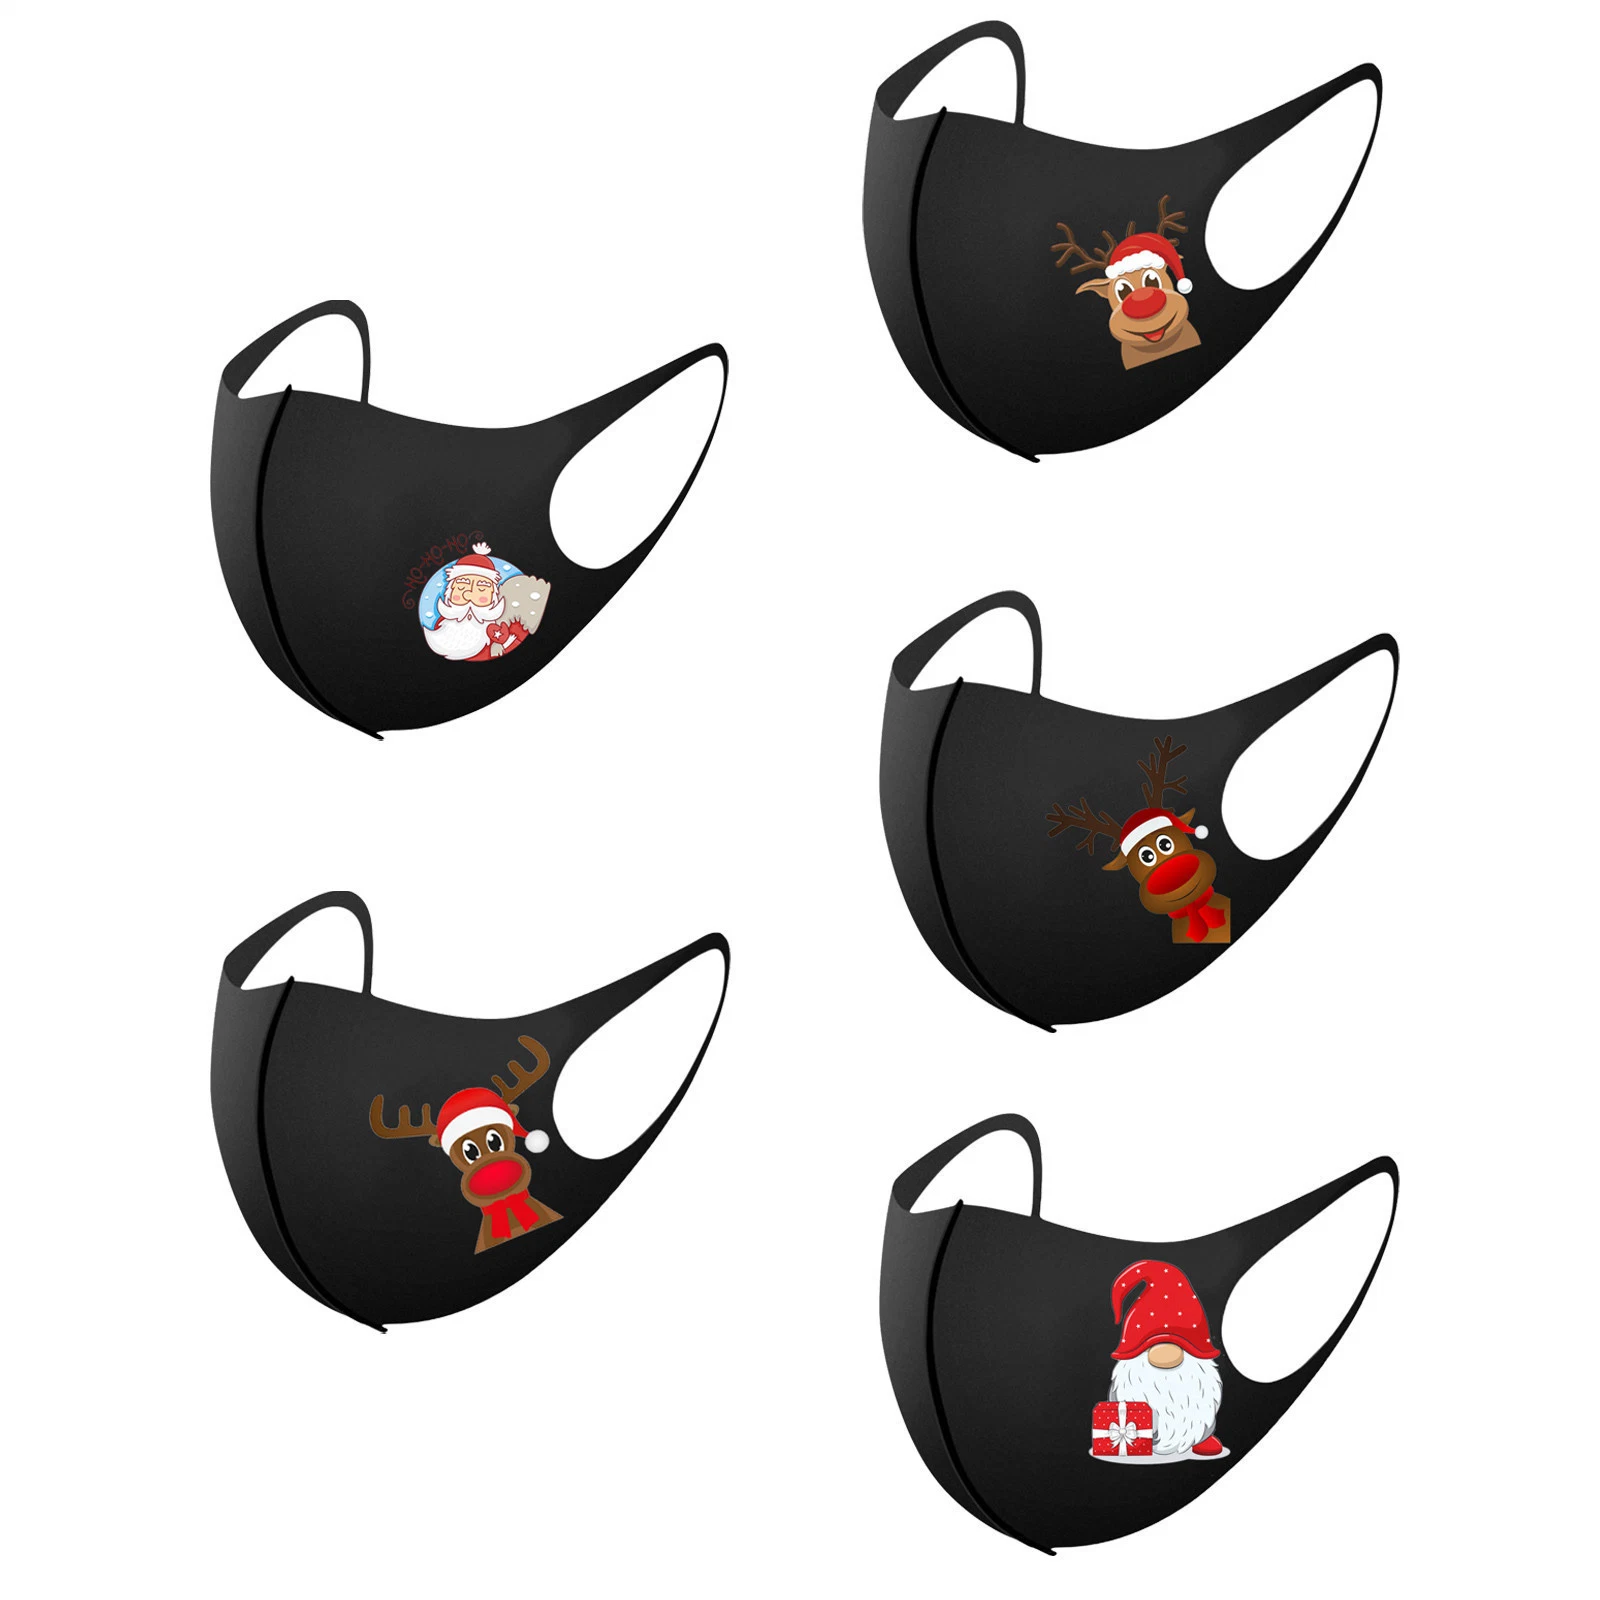 Logo personnalisée OEM décoratifs enfants adultes de coton de tissu noir favorise l'Animal Masque bouche Creative Party de Noël masque réutilisables